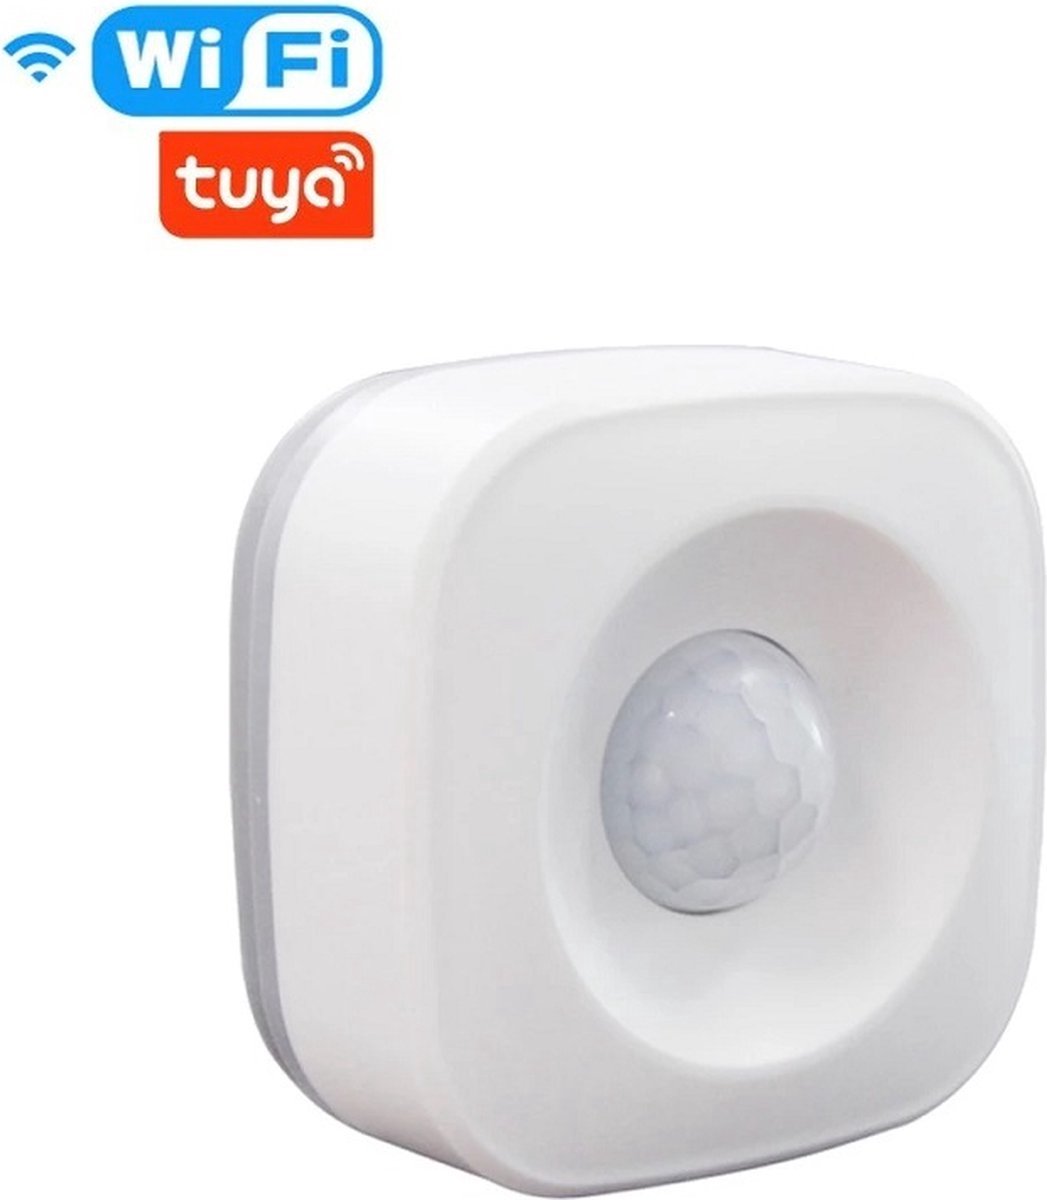 Tuya WiFi Motion Sensor - Tuya Sensoren - Slimme bewegingsensor - Slimme sensor - Smart Life